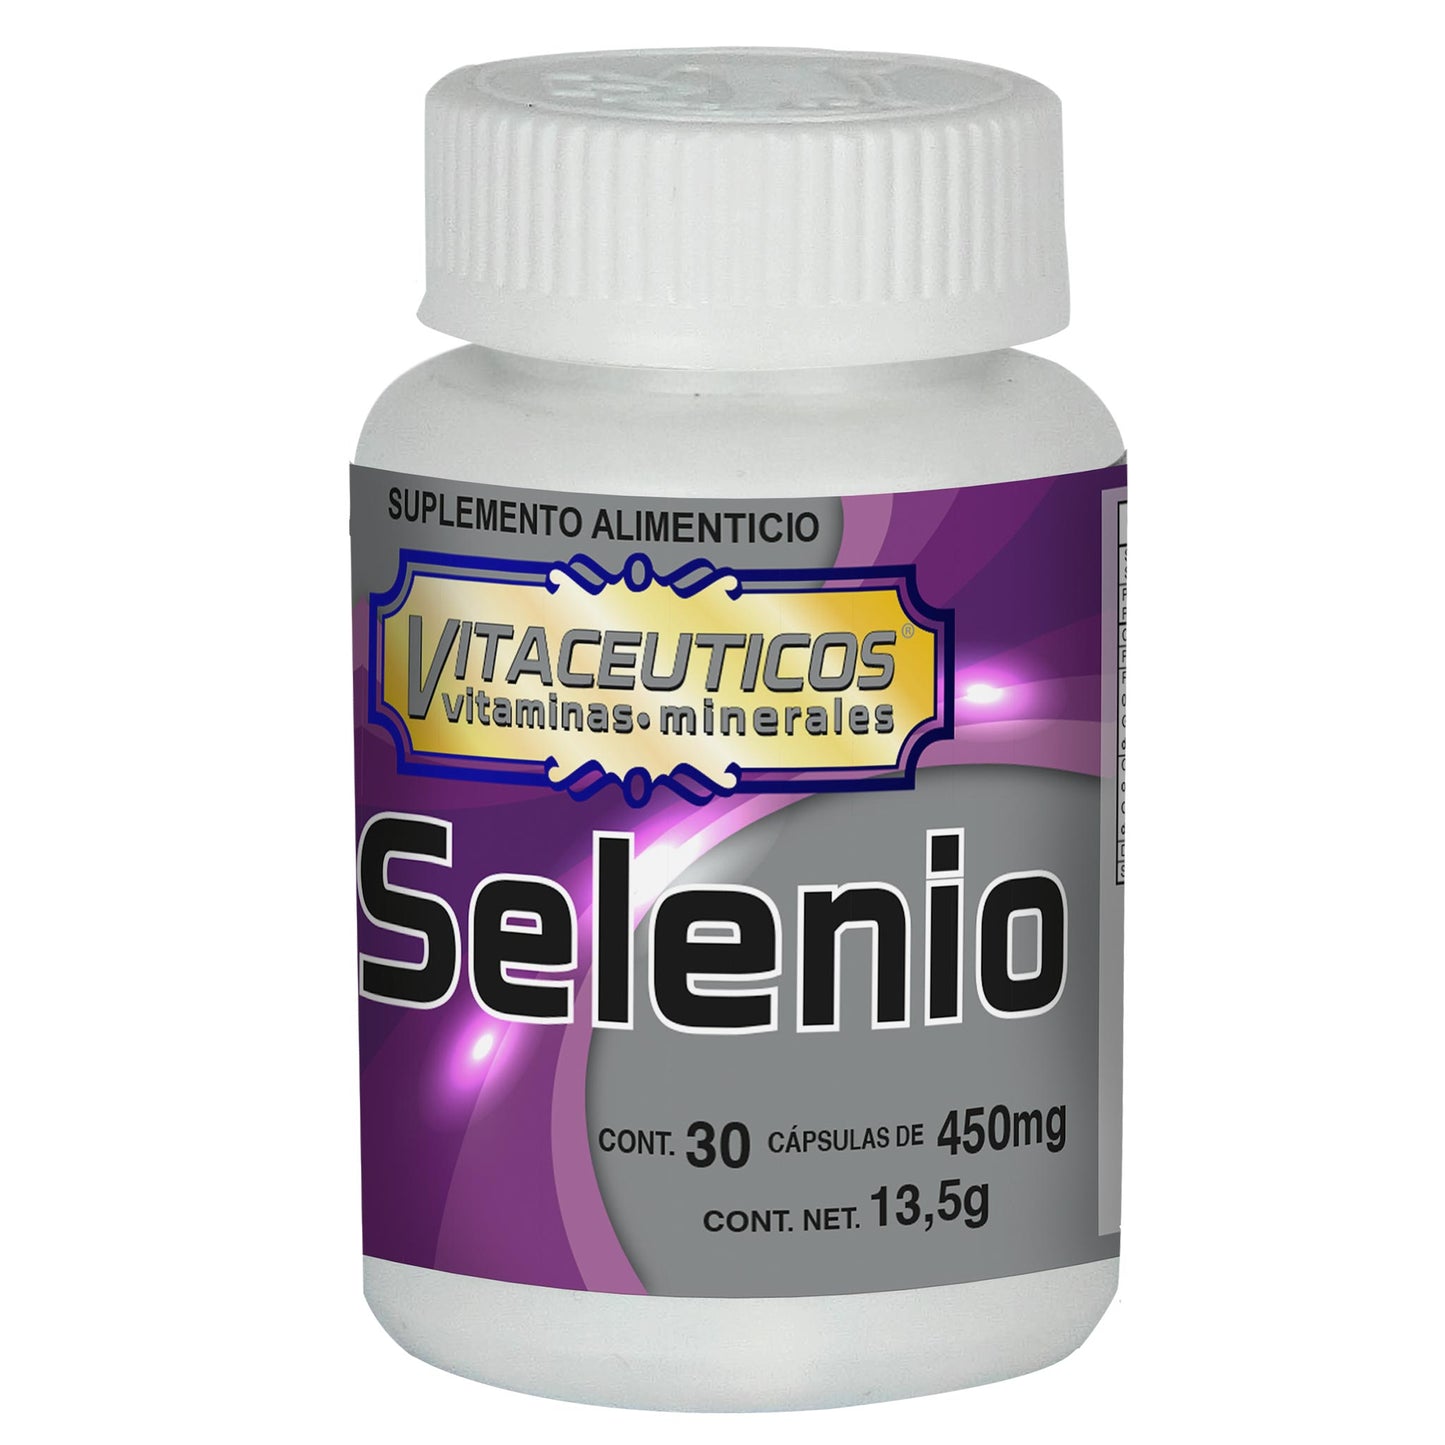 VITACEUTICOS ® 30 cápsulas de selenio